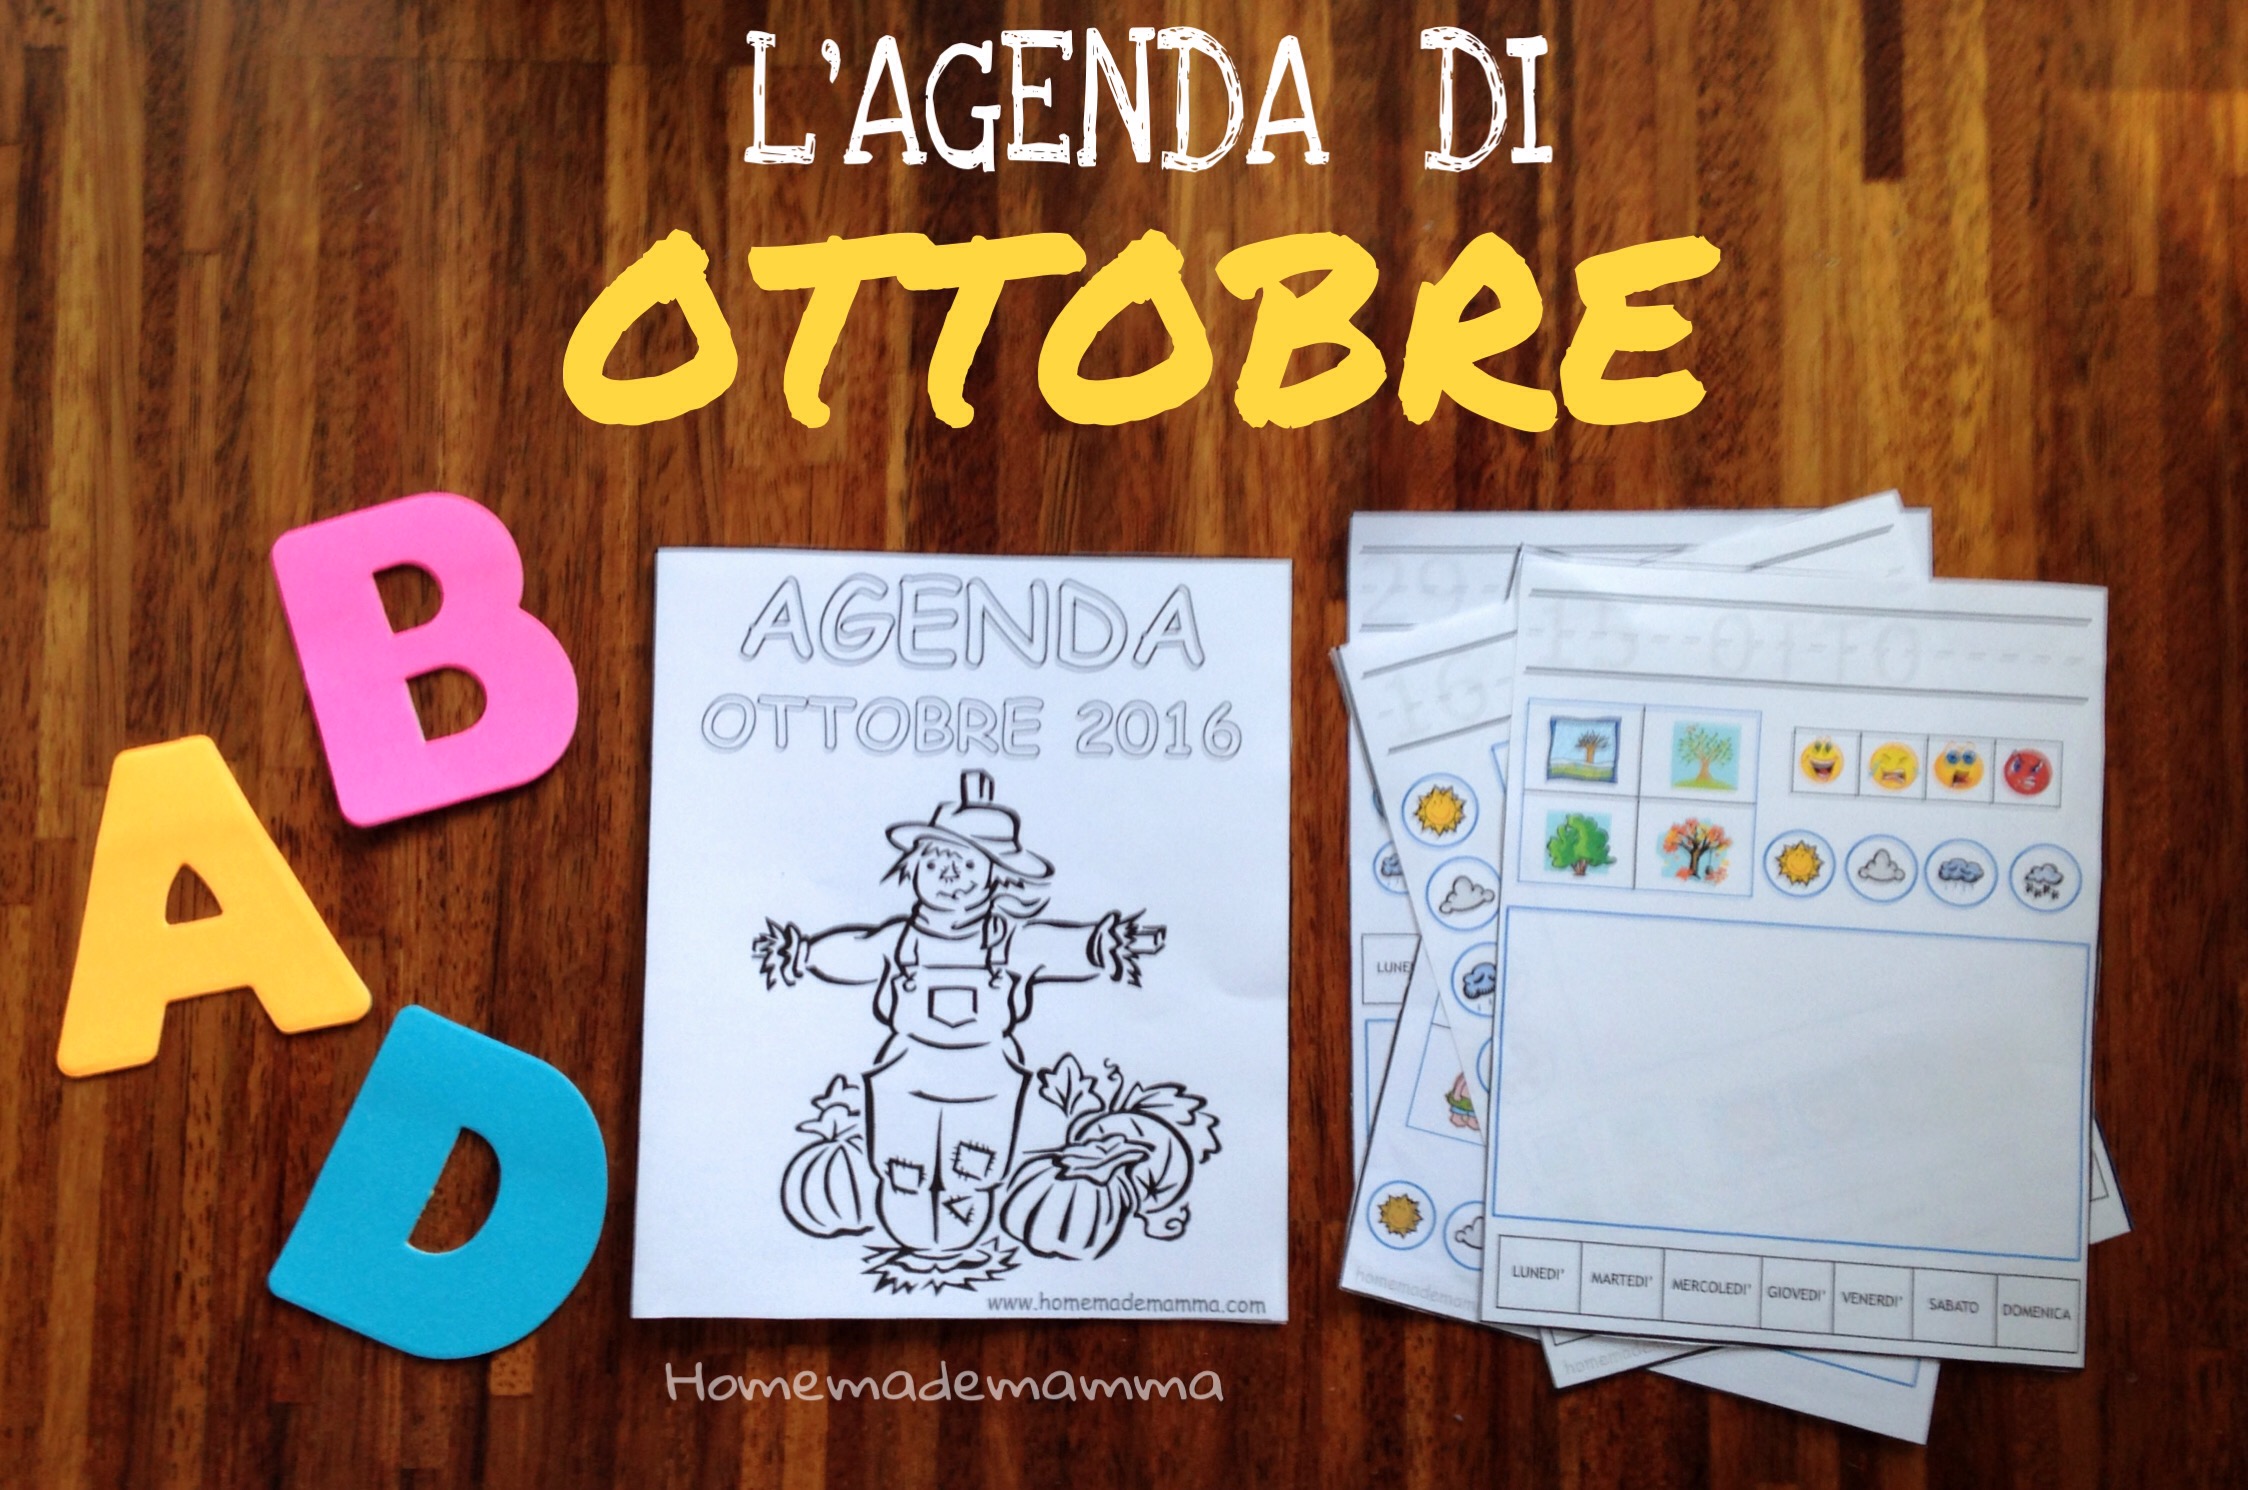 agenda diario per bambini da stampare ottobre